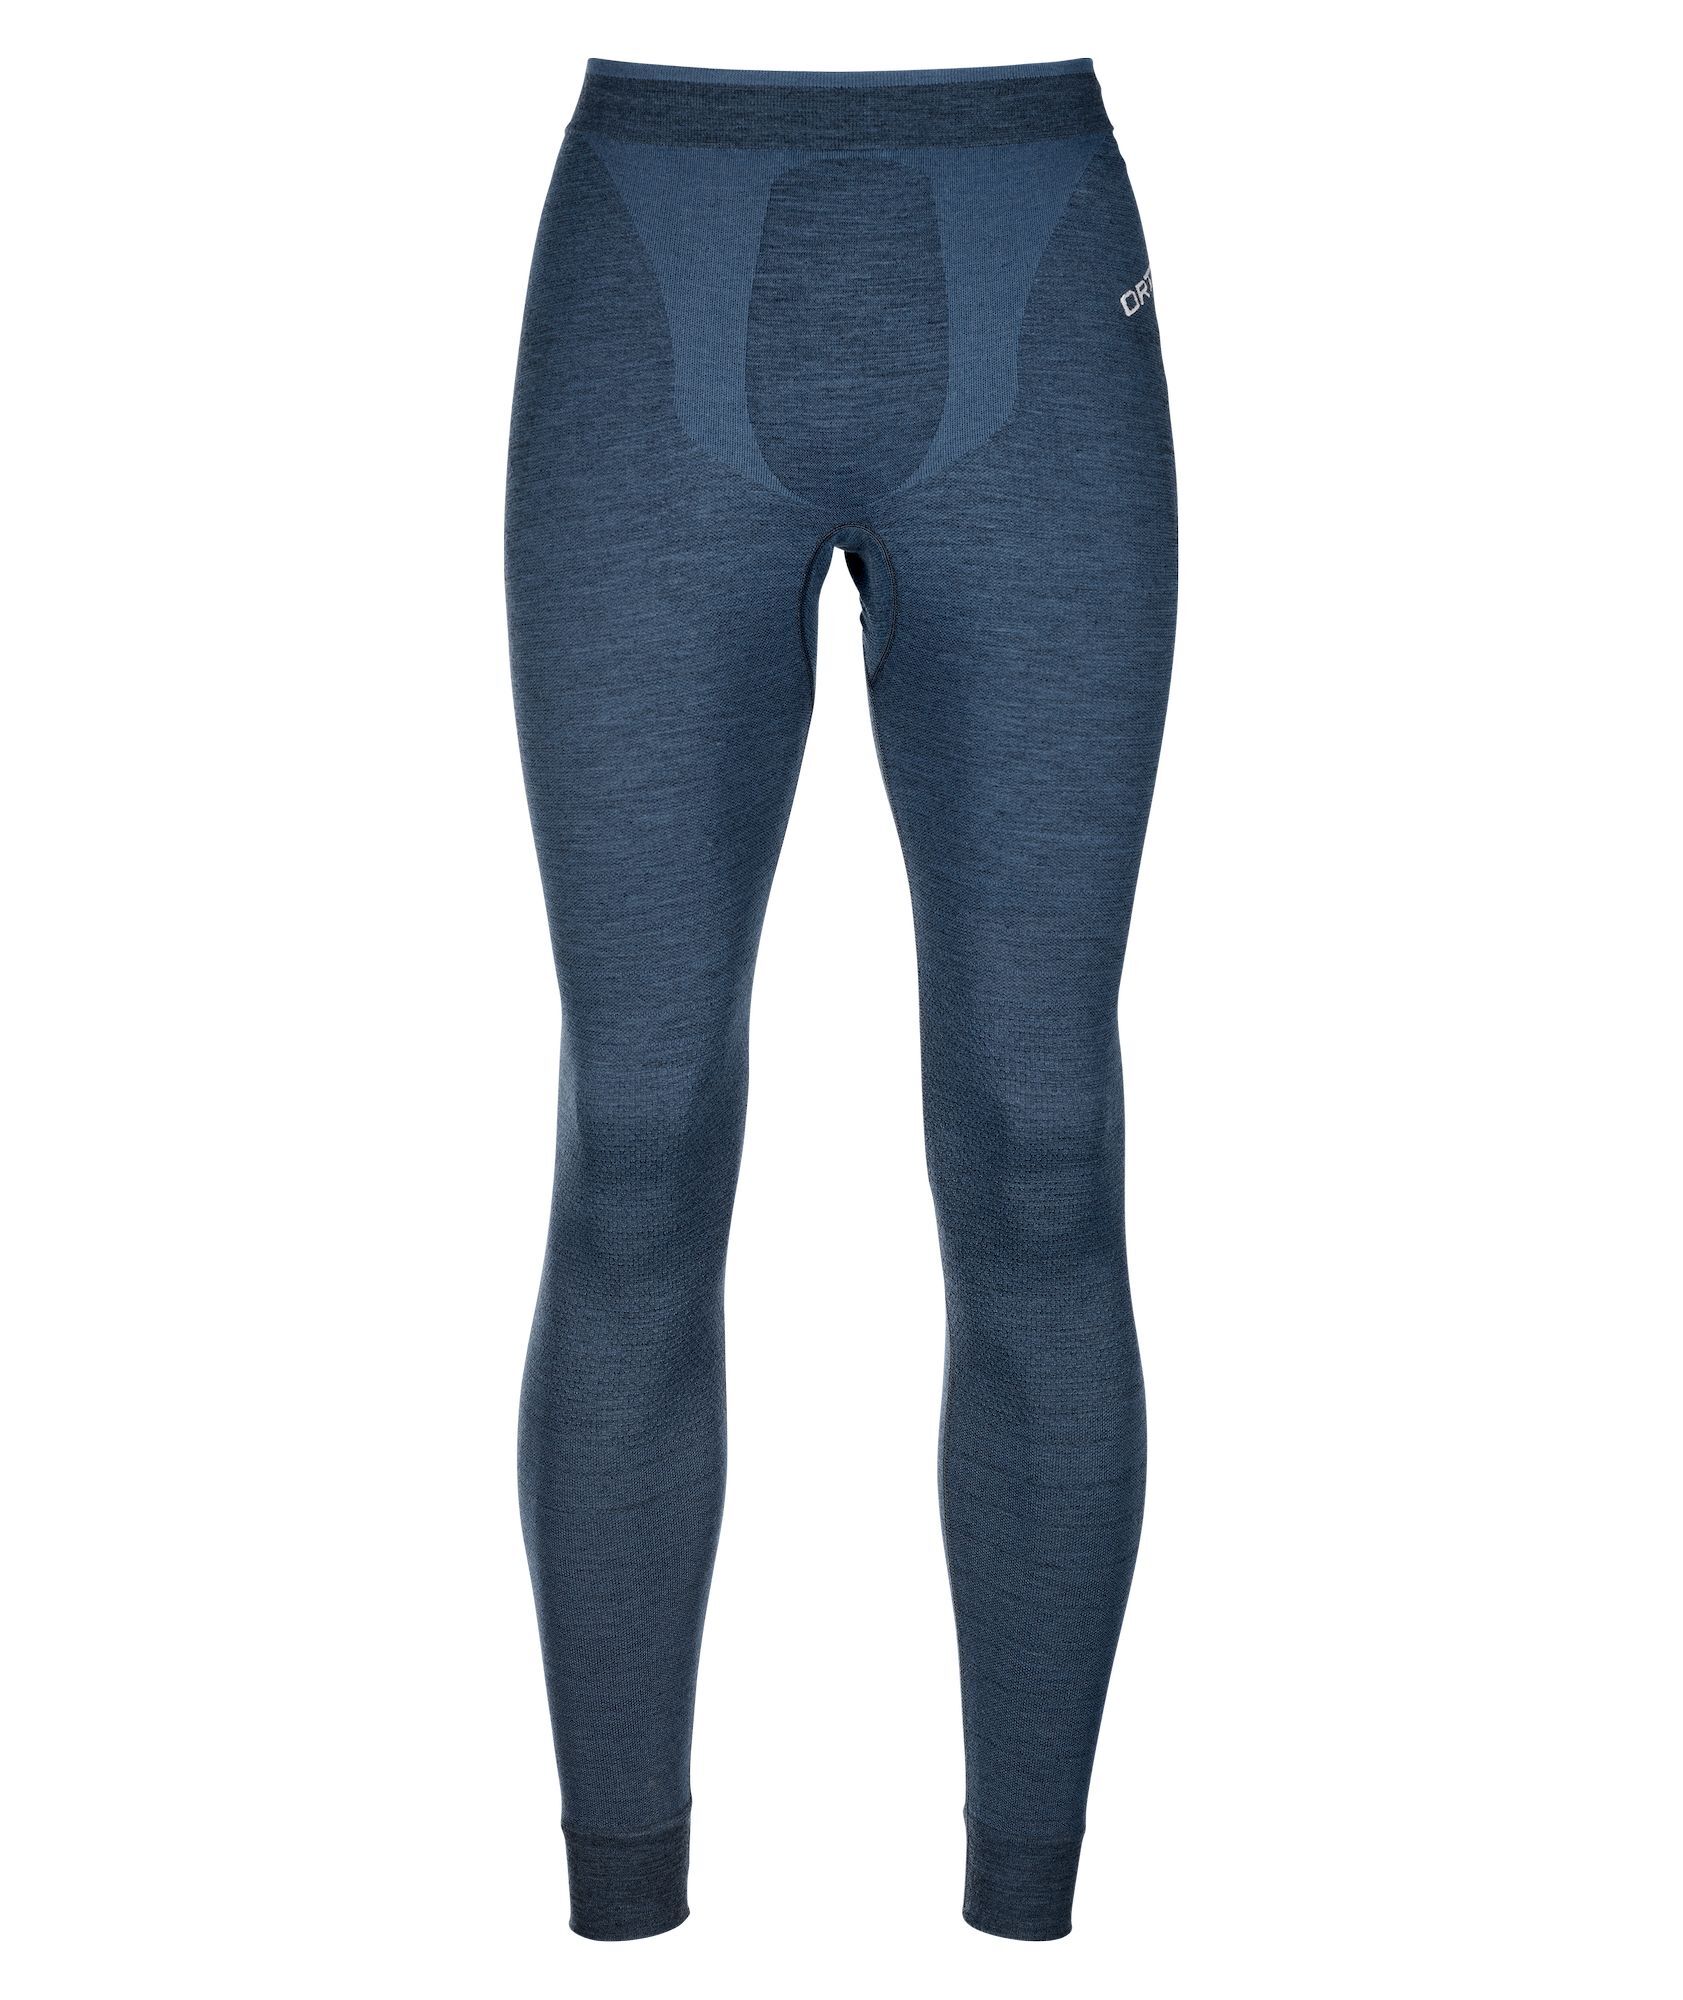 Ortovox 230 Competition Long Pants - Sous-vêtement thermique homme | Hardloop